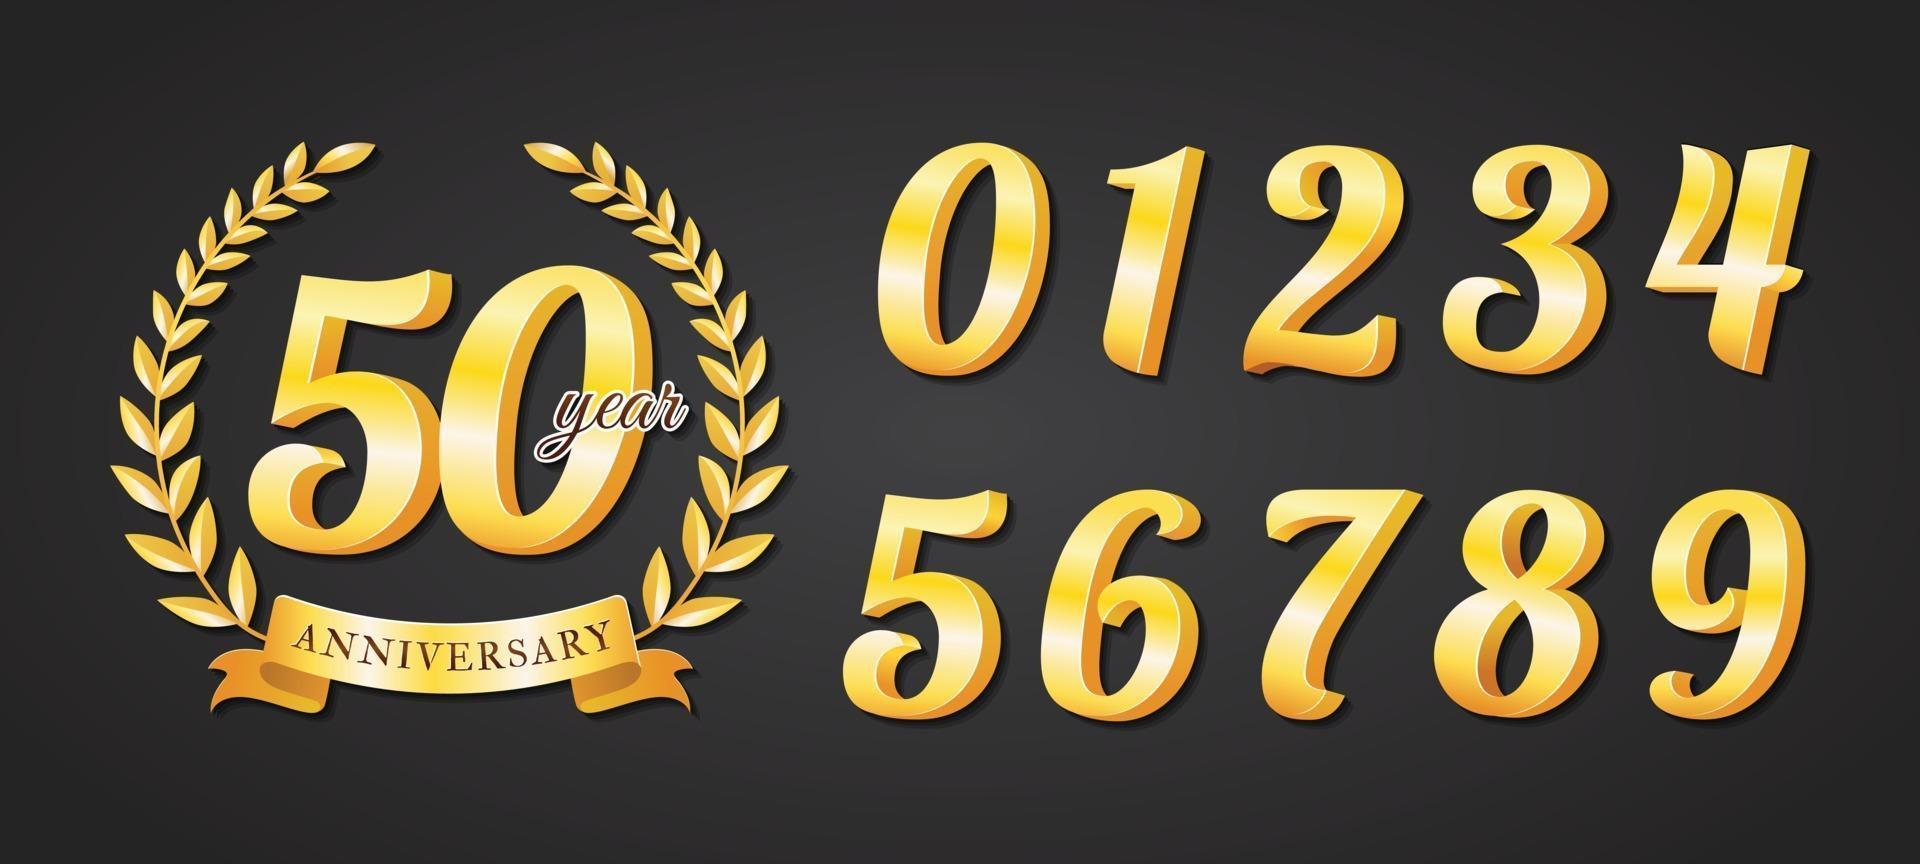 conjunto de número de metal dorado para insignia de aniversario vector